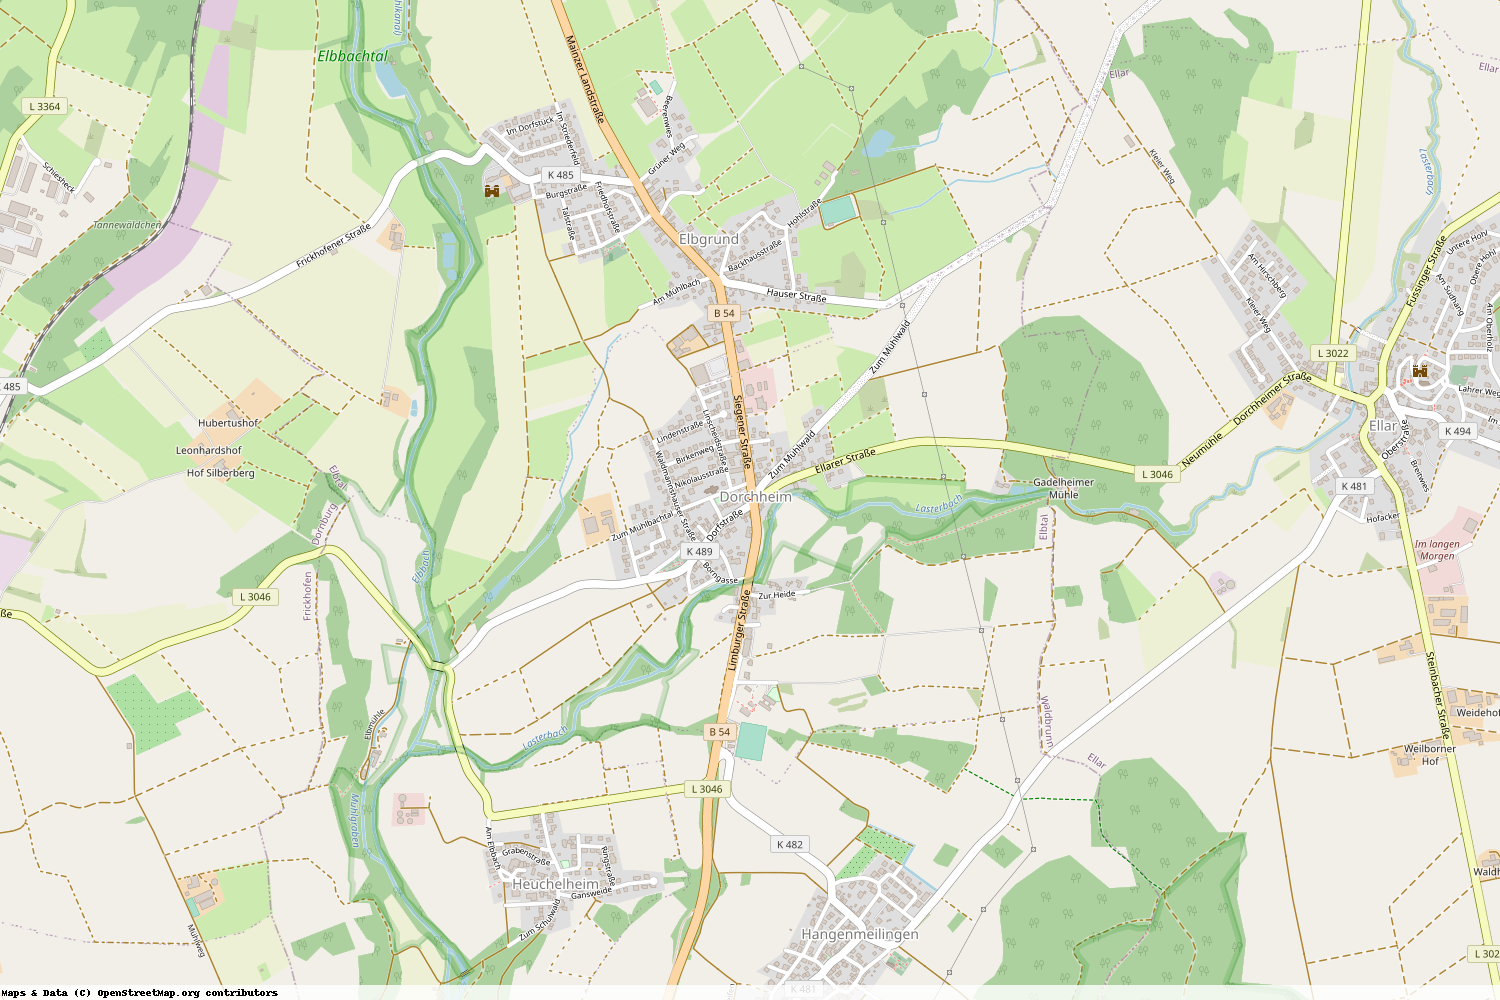 Ist gerade Stromausfall in Hessen - Limburg-Weilburg - Elbtal?